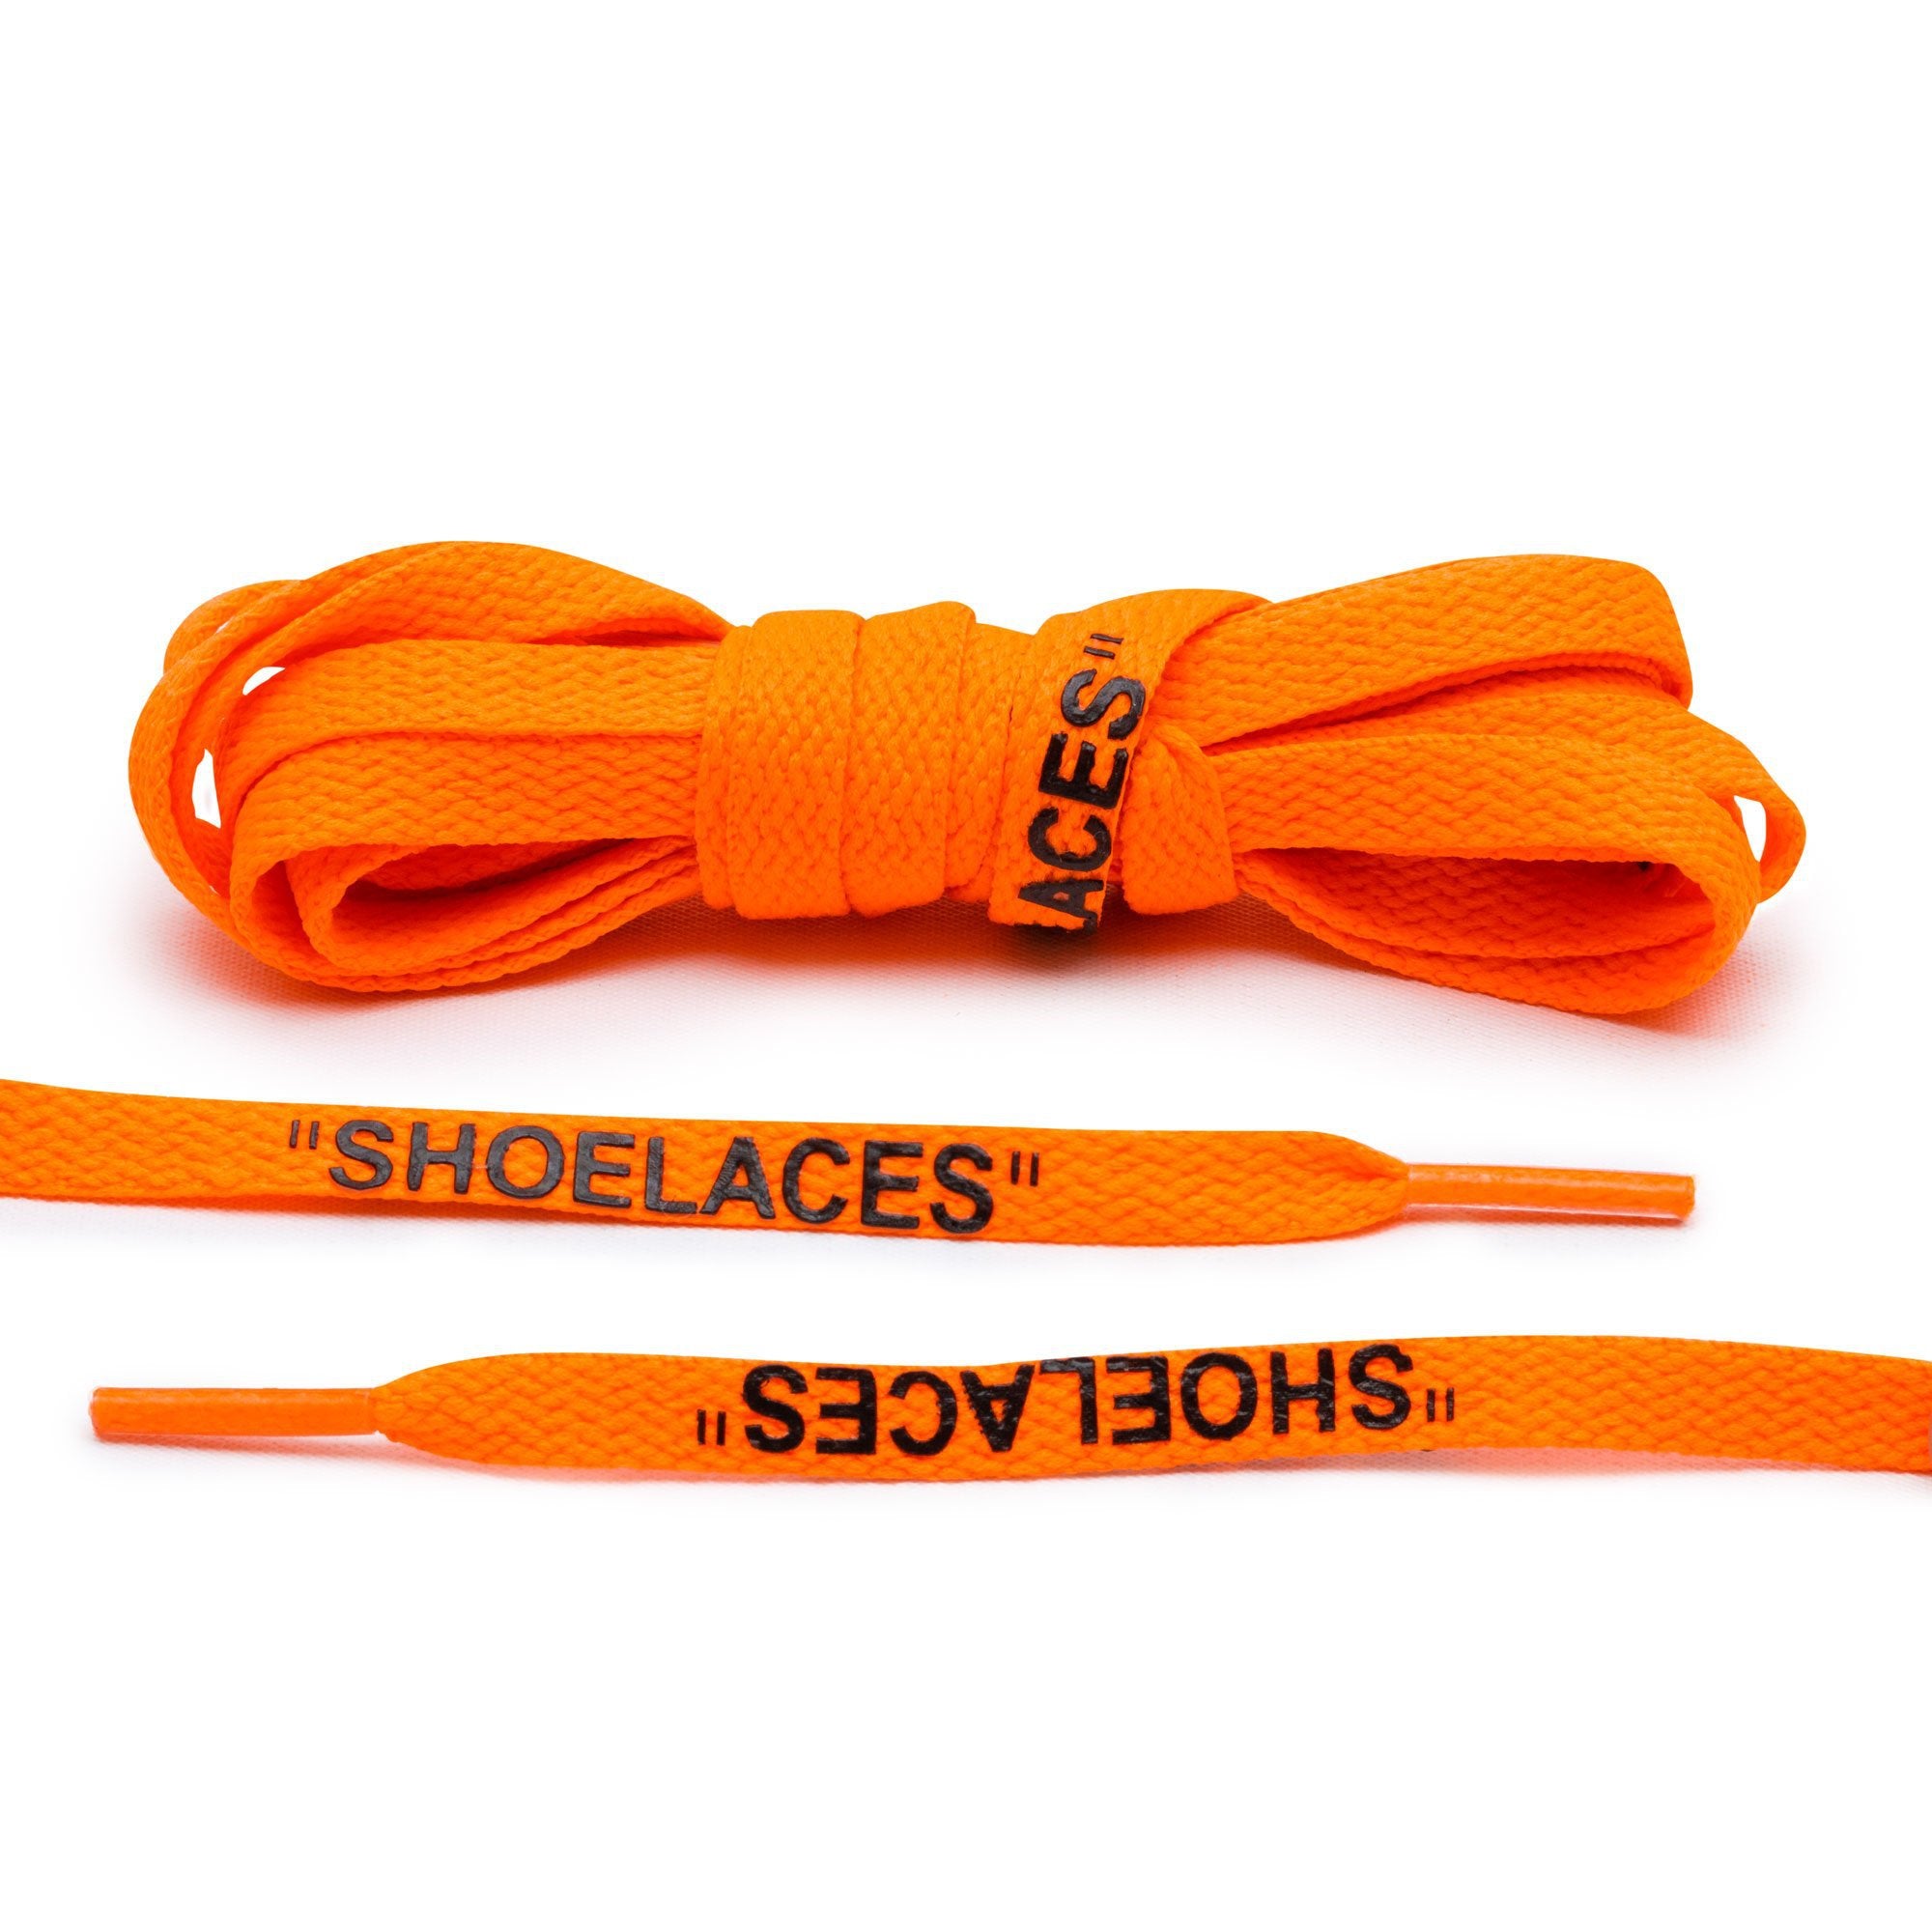 Neon Orange/Black Off-White "SHOELACES" Shoe Laces